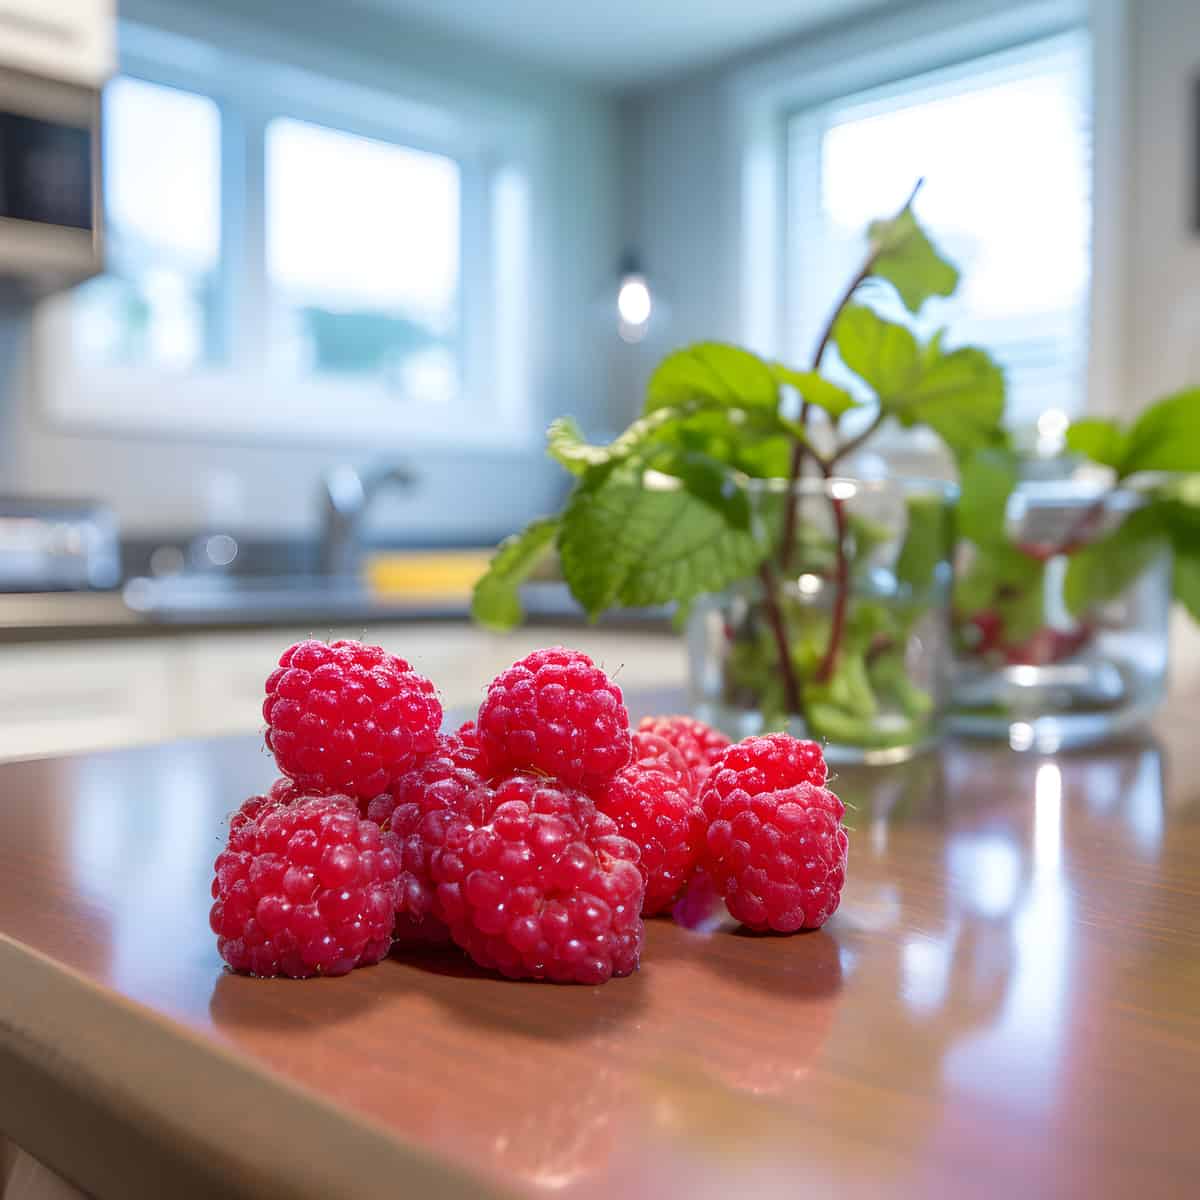 Mountain Raspberry on a kitchen counter